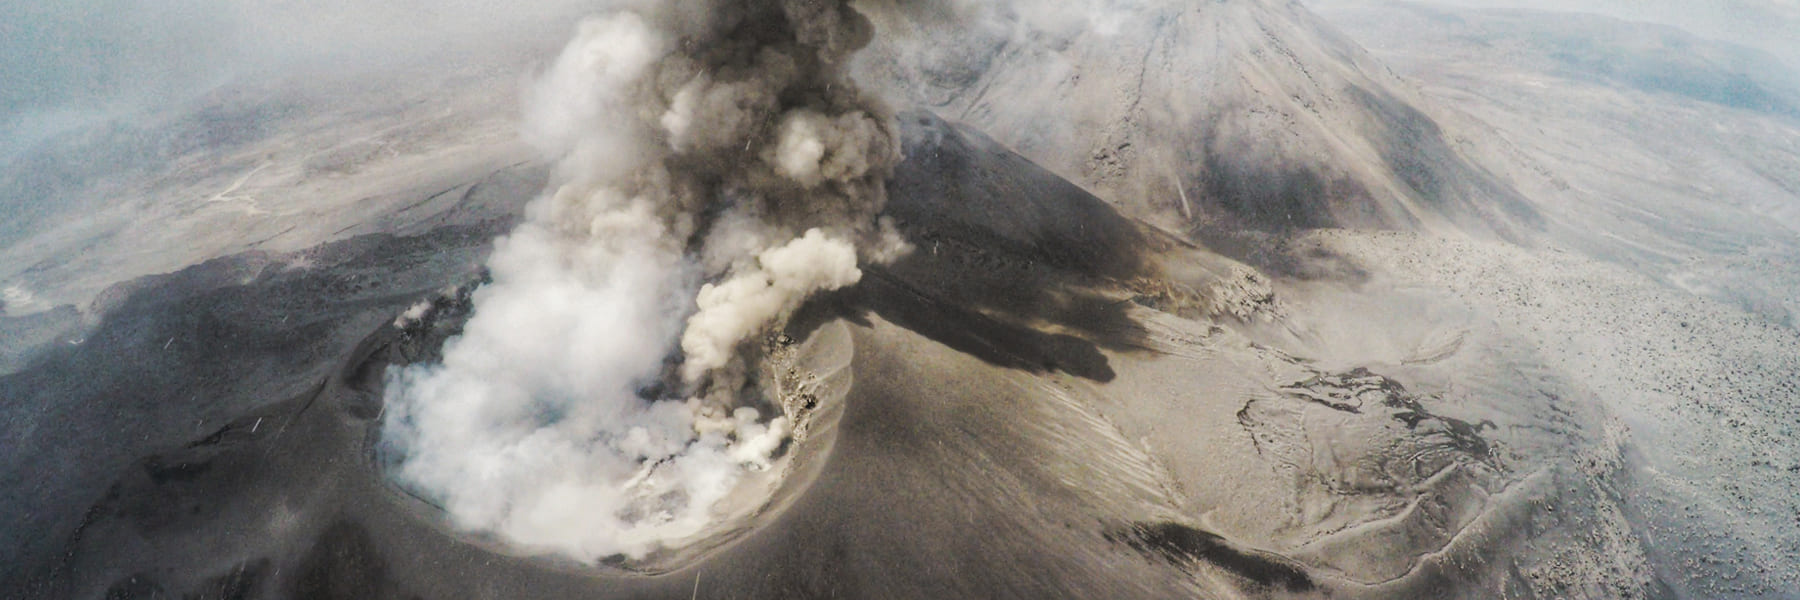 Cráter del volcán Sabancaya fotografiado con un dron